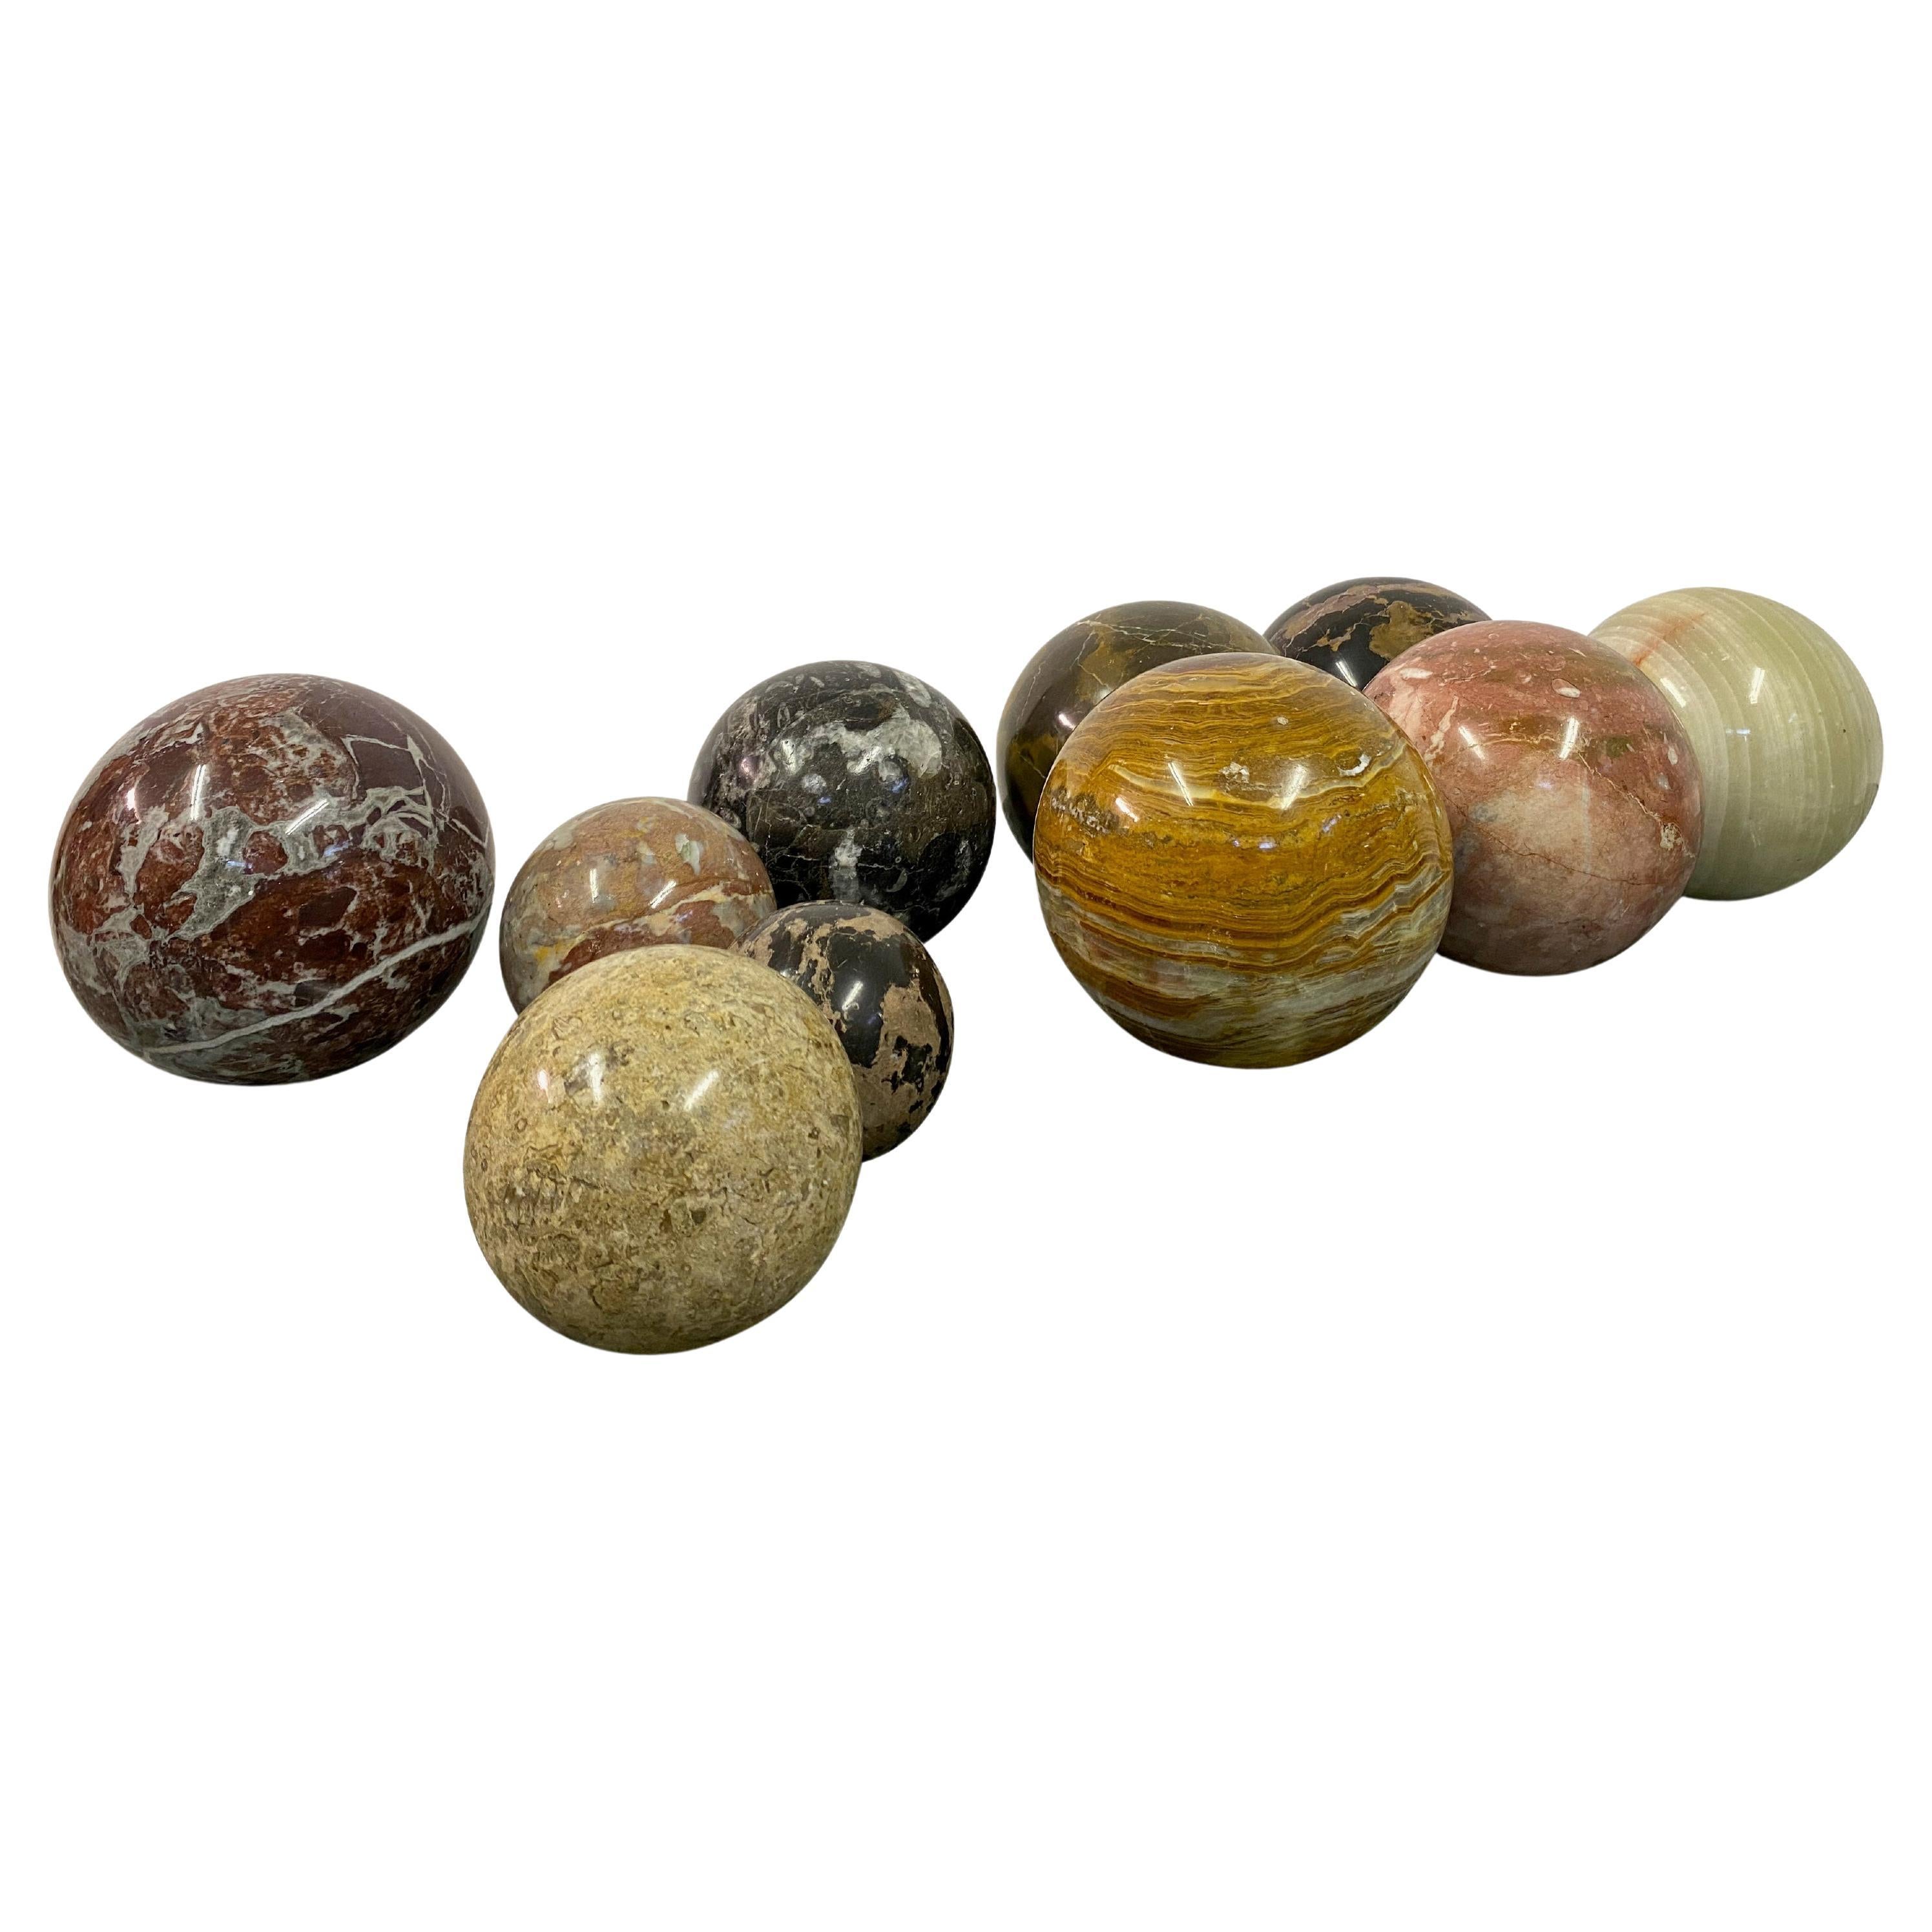 Auswahl an Exemplaren von Marmor- und Steinkugeln